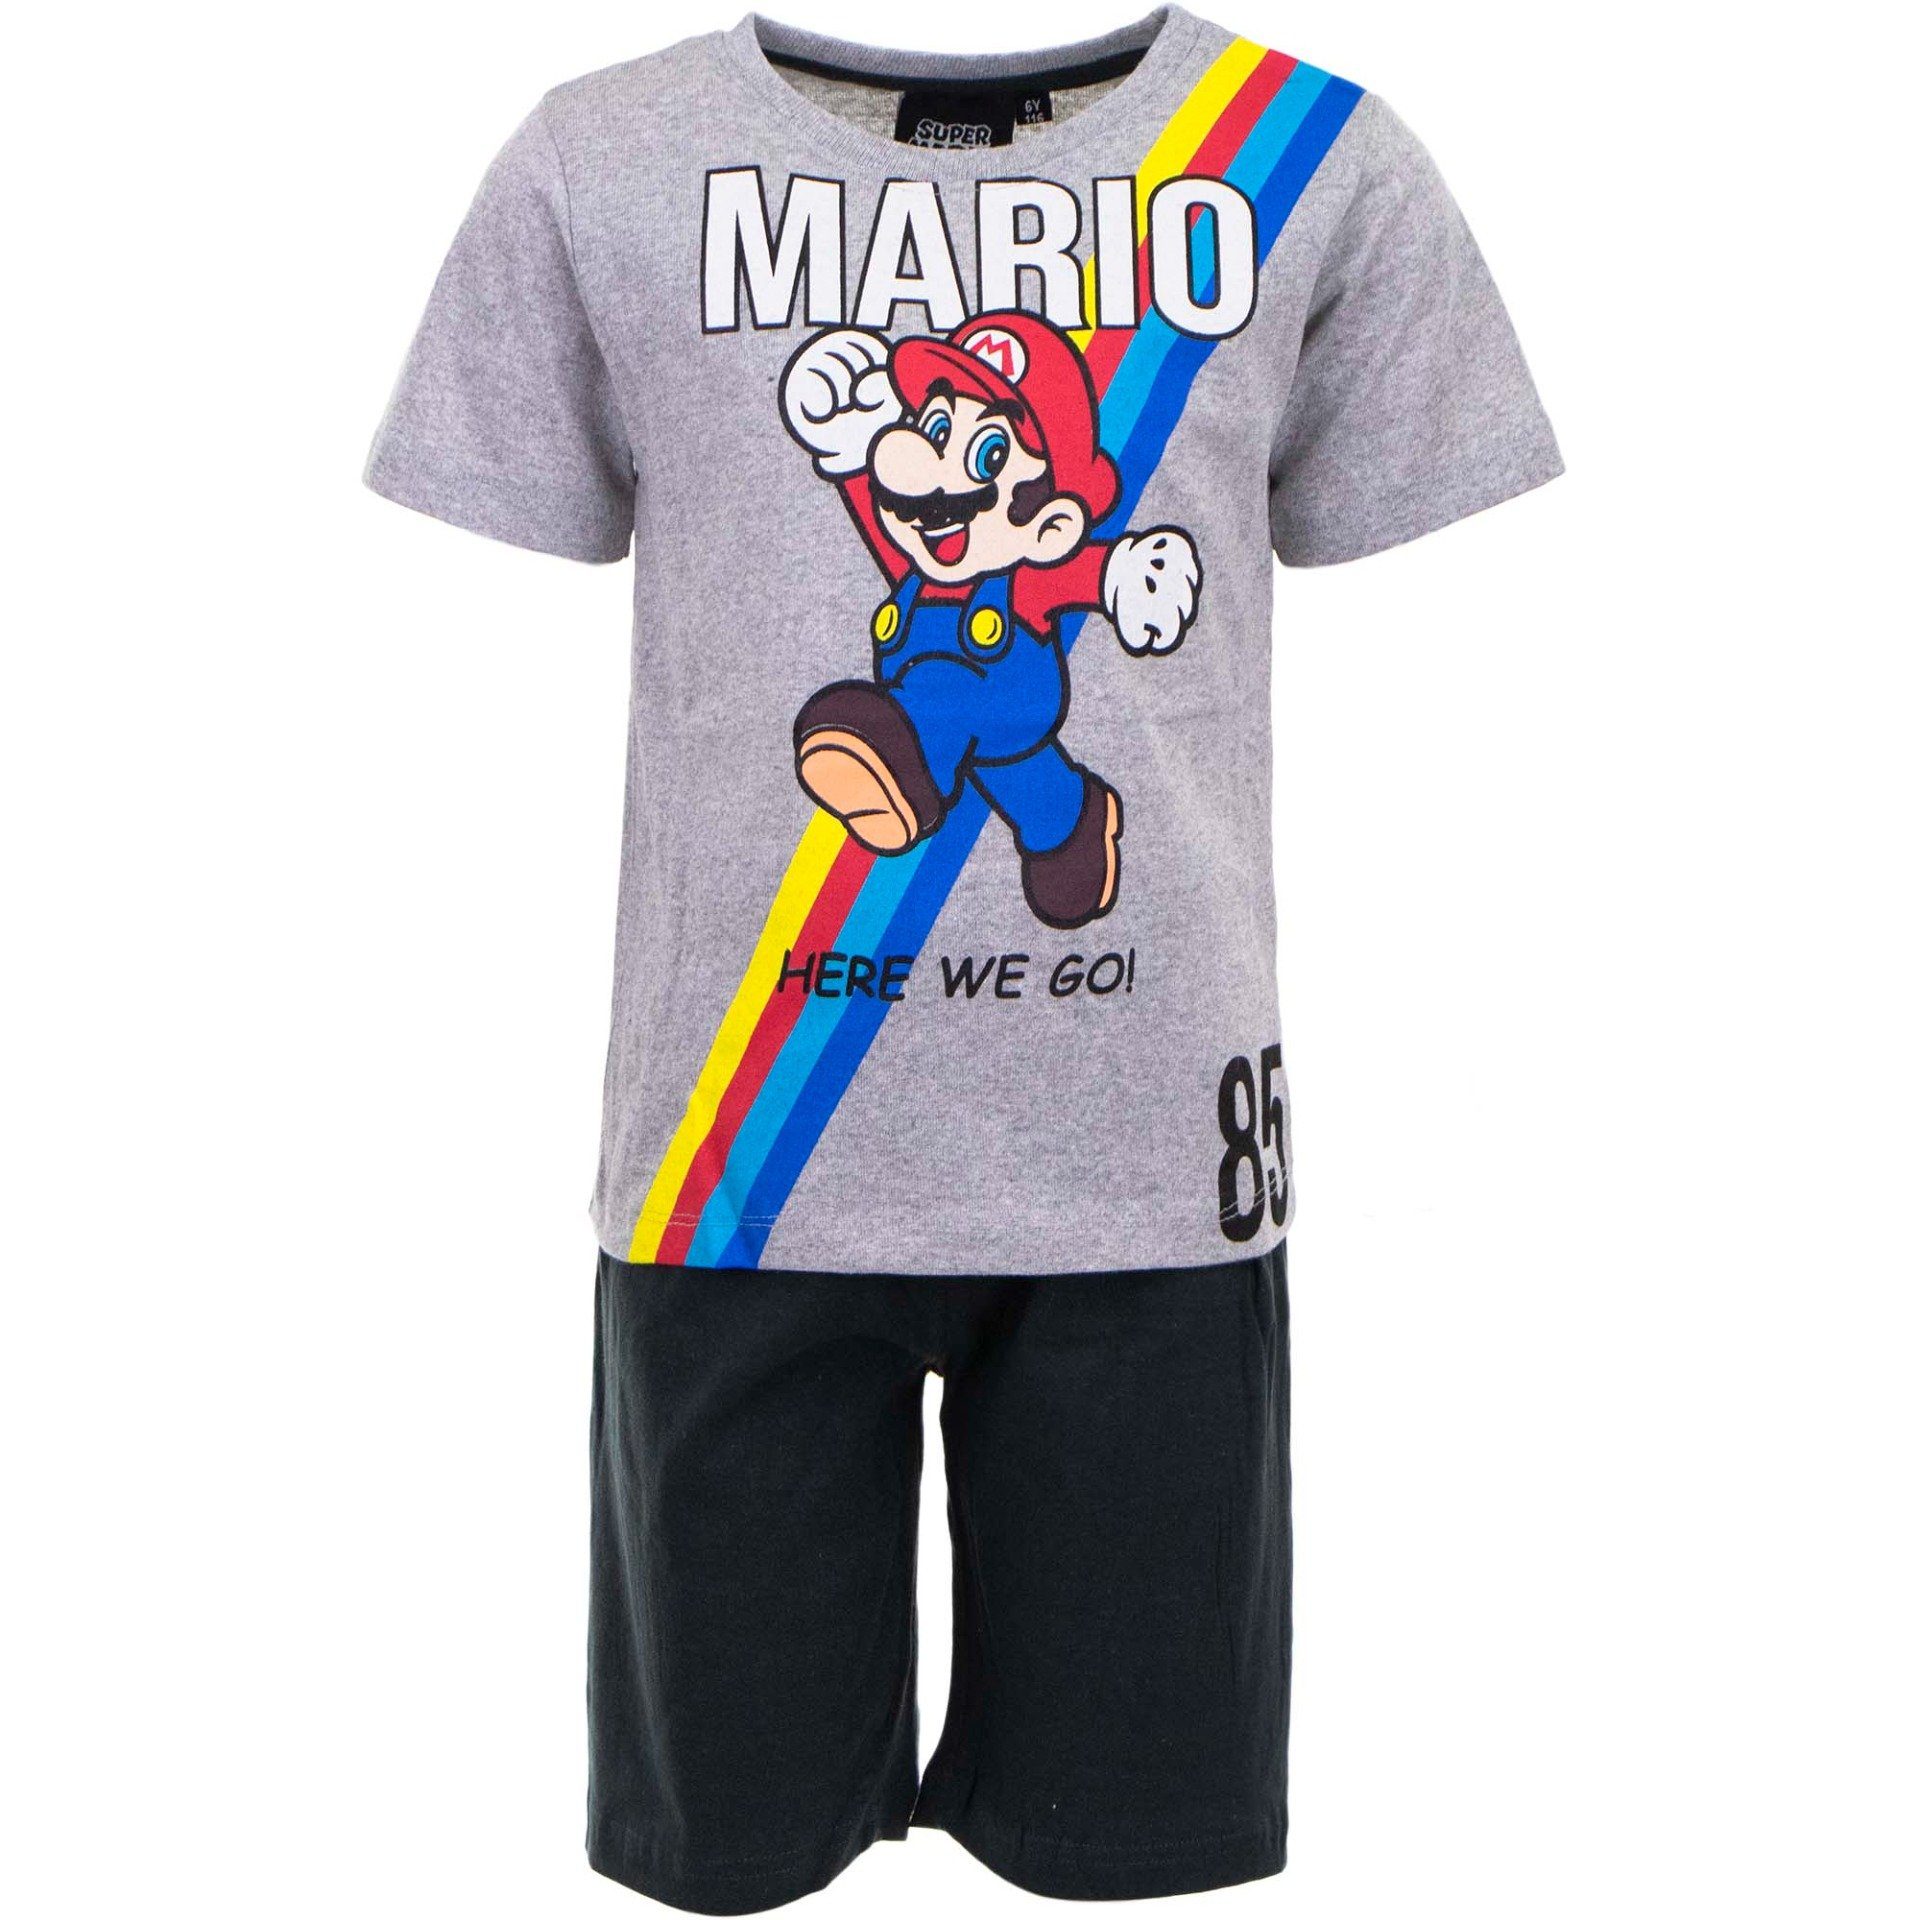 Super Mario Schlafanzug Here Go We Schwarz Grau Gr. Jungen bis 98 128, Baumwolle, Pyjama